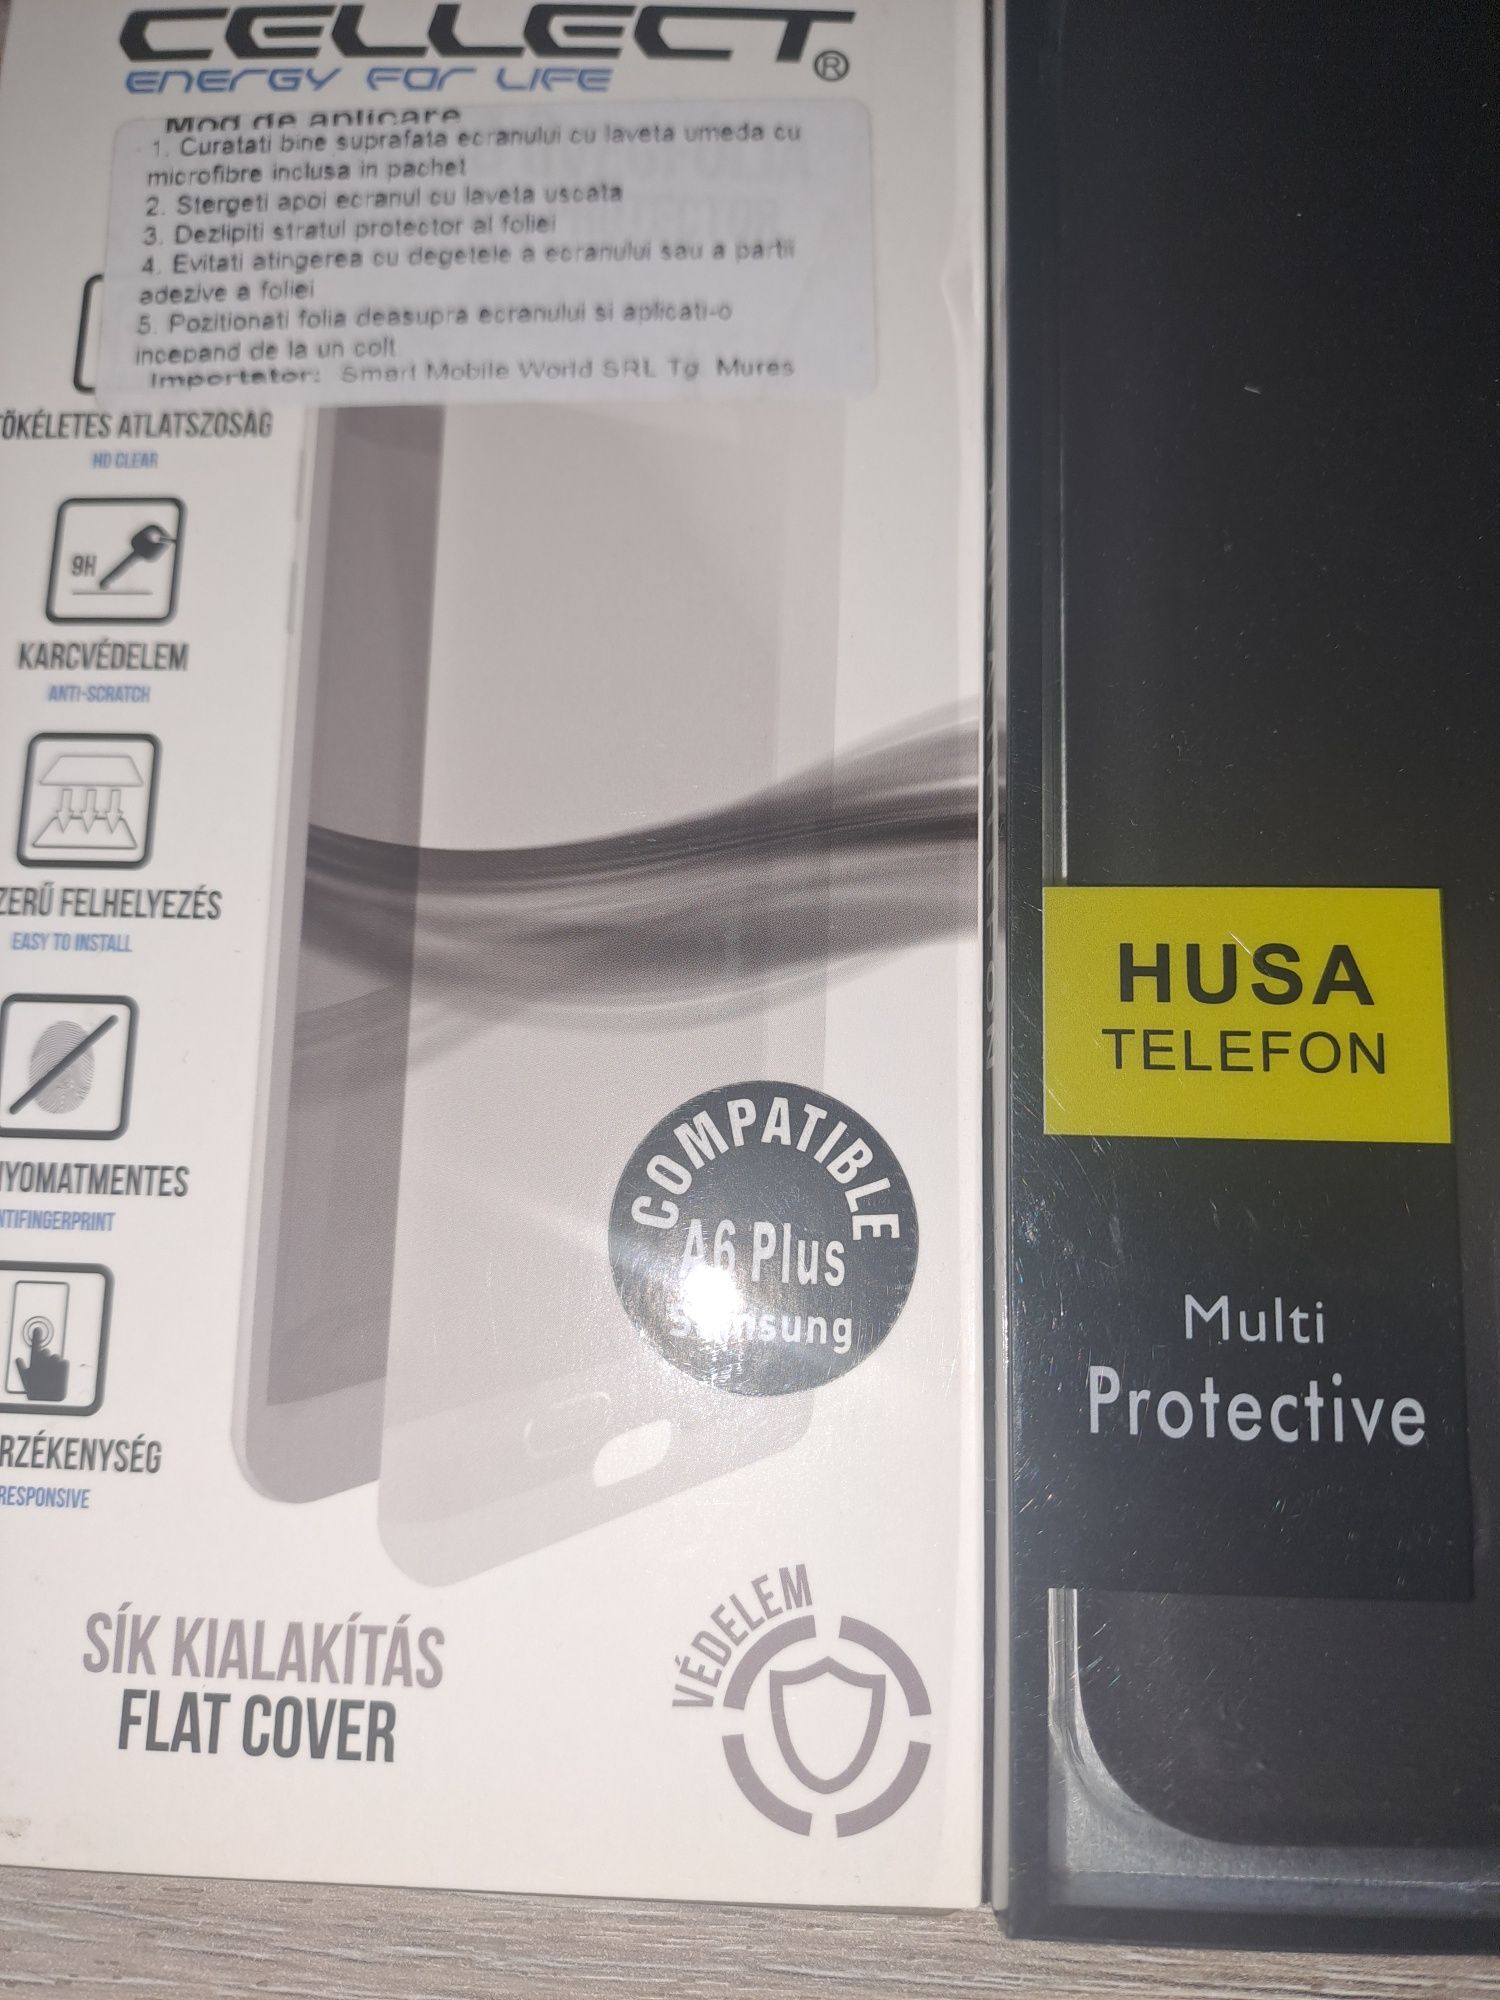 Husa și folie protecție pentru Samsung a6plus.